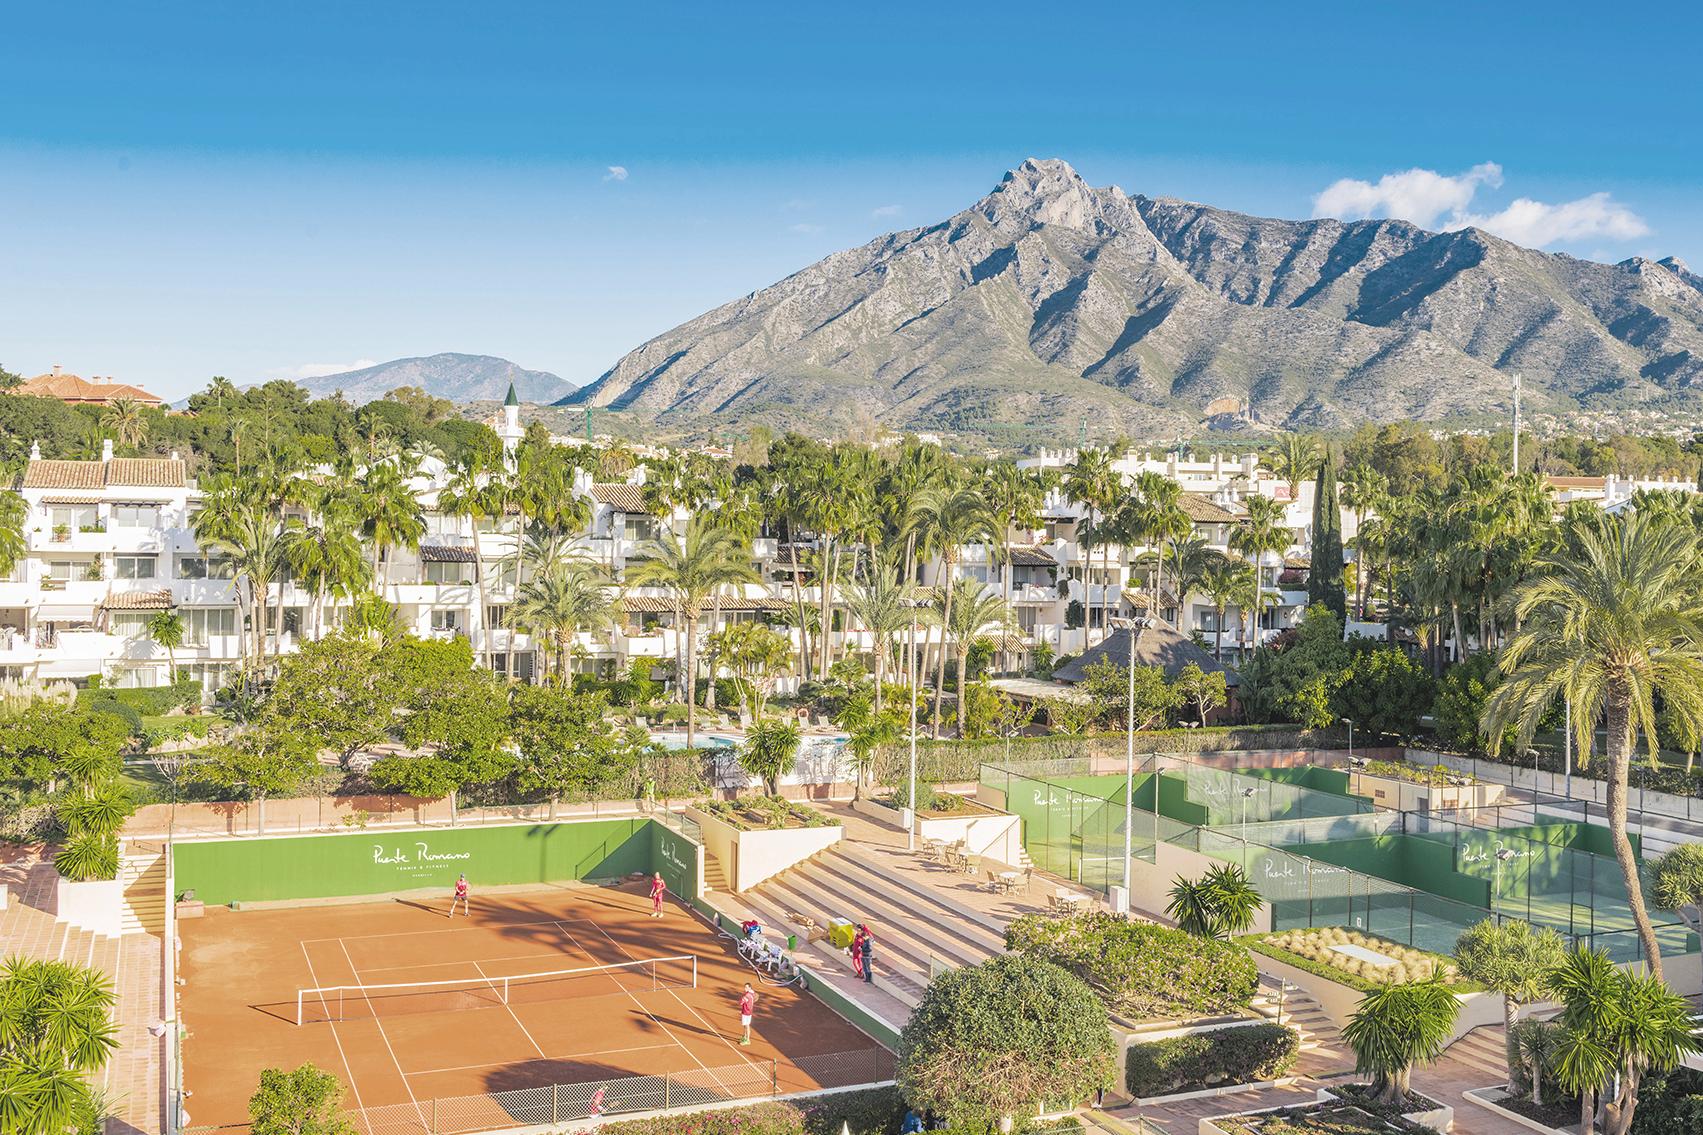 Puente Romano Tennis Club